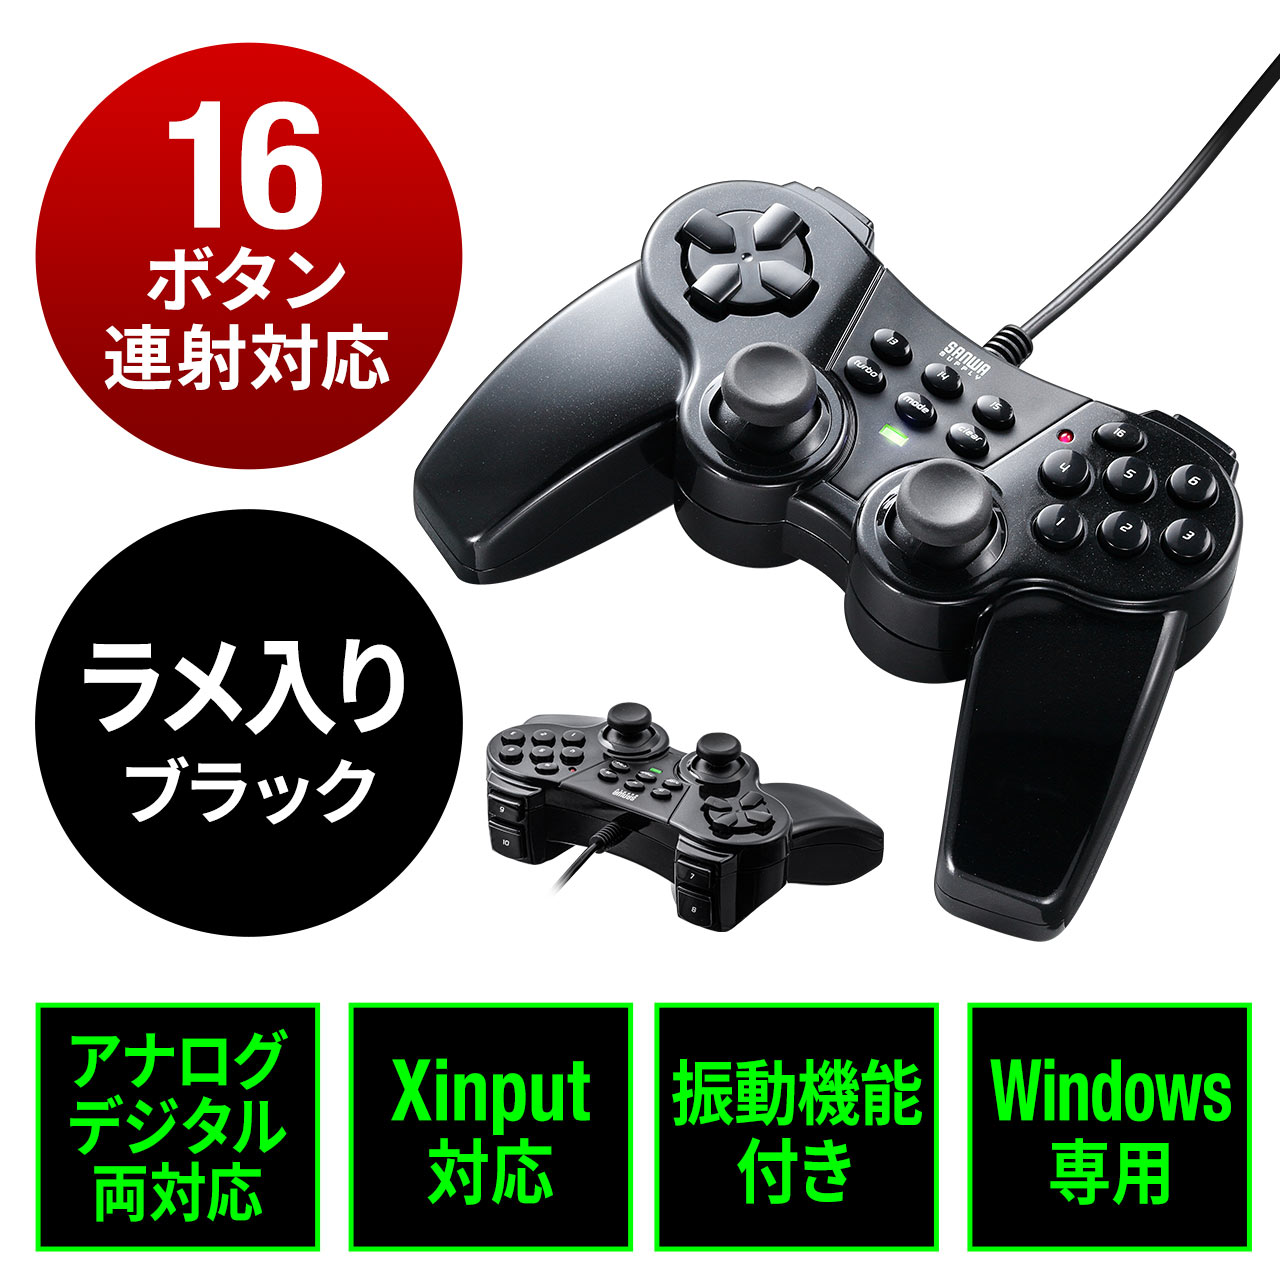 多ボタンゲームパッド（16ボタン・全ボタン連射対応・アナログ・デジタル・Xinput対応・振動機能付・日本製高耐久シリコンラバー使用・windows専用）  400-JYP62UBKXの販売商品 | 通販ならサンワダイレクト